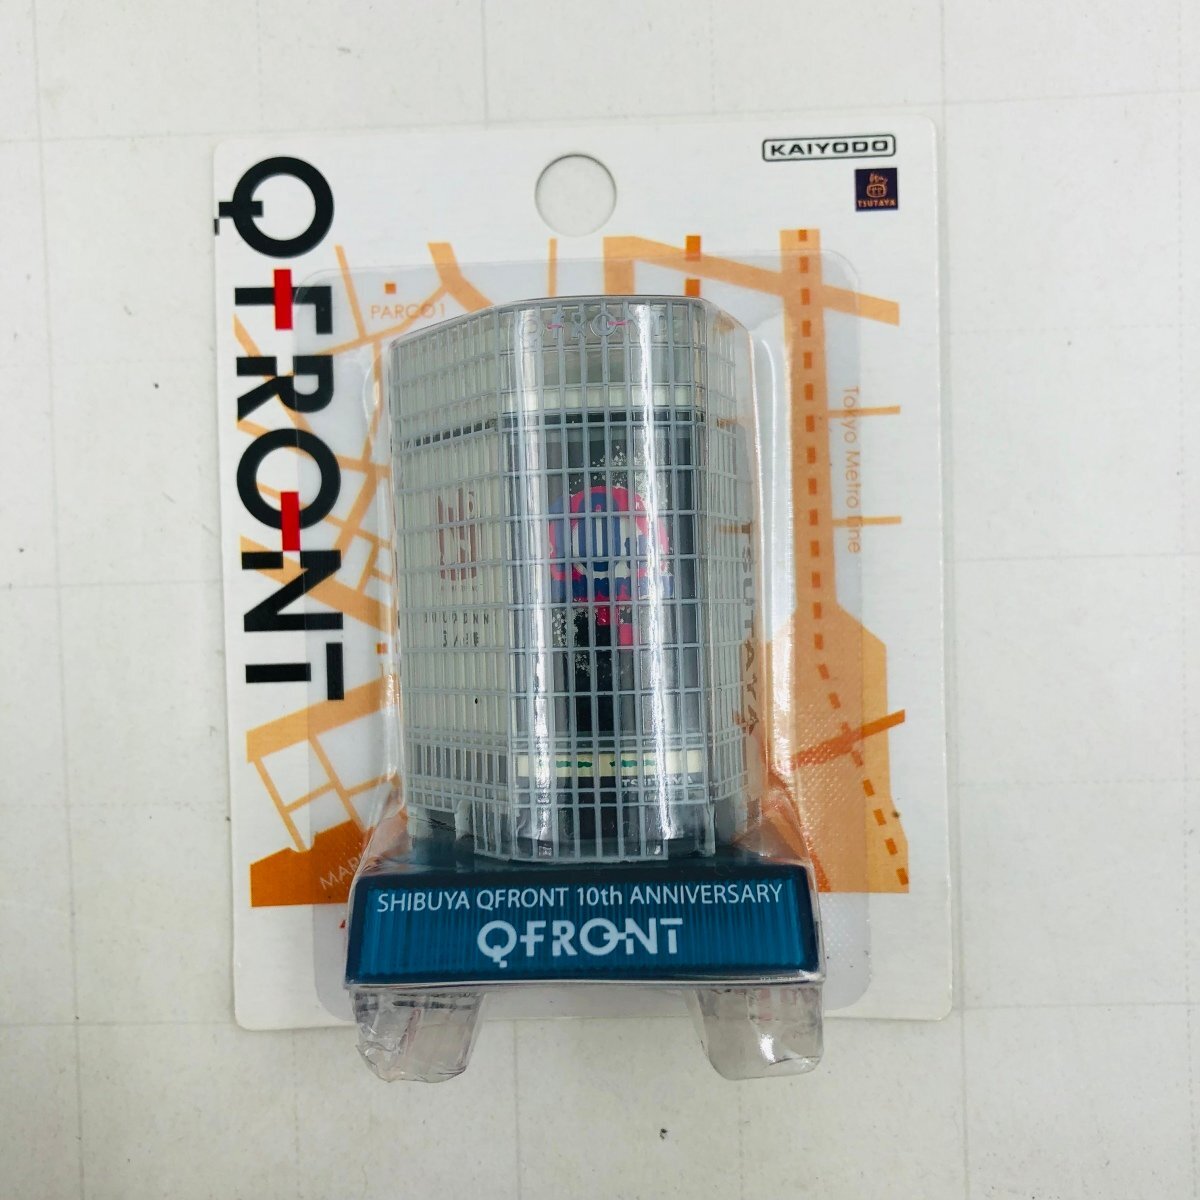 新品未開封 海洋堂 渋谷 QFRONT 10周年記念 QFRONT フィギュア クリアブルー_画像1